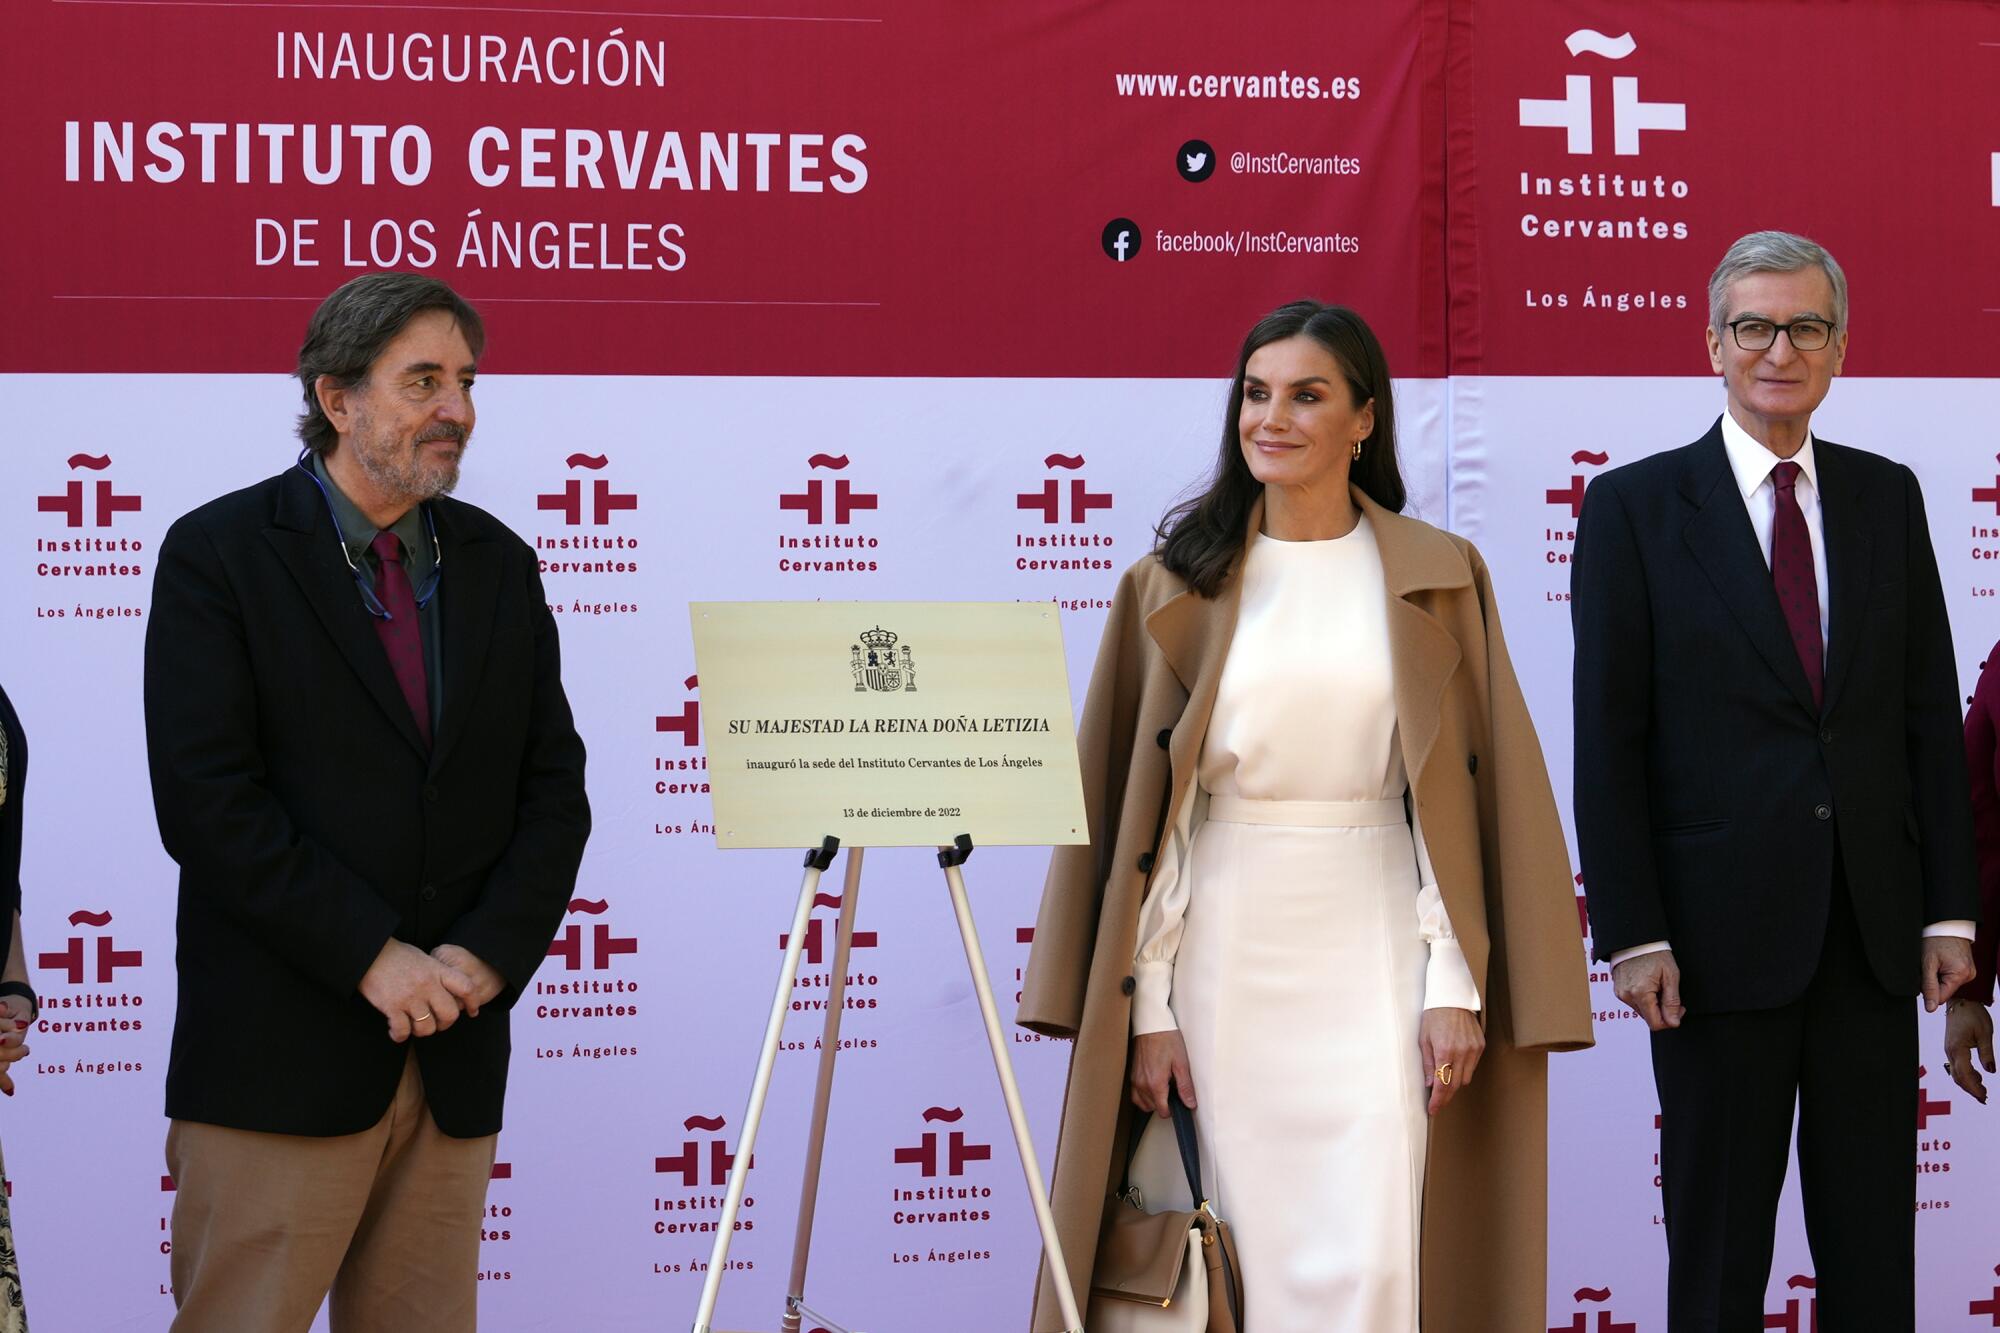 La reina Letizia de España durante la inauguración del Instituto Cervantes de Los Ángeles, el martes 13 de diciembre 